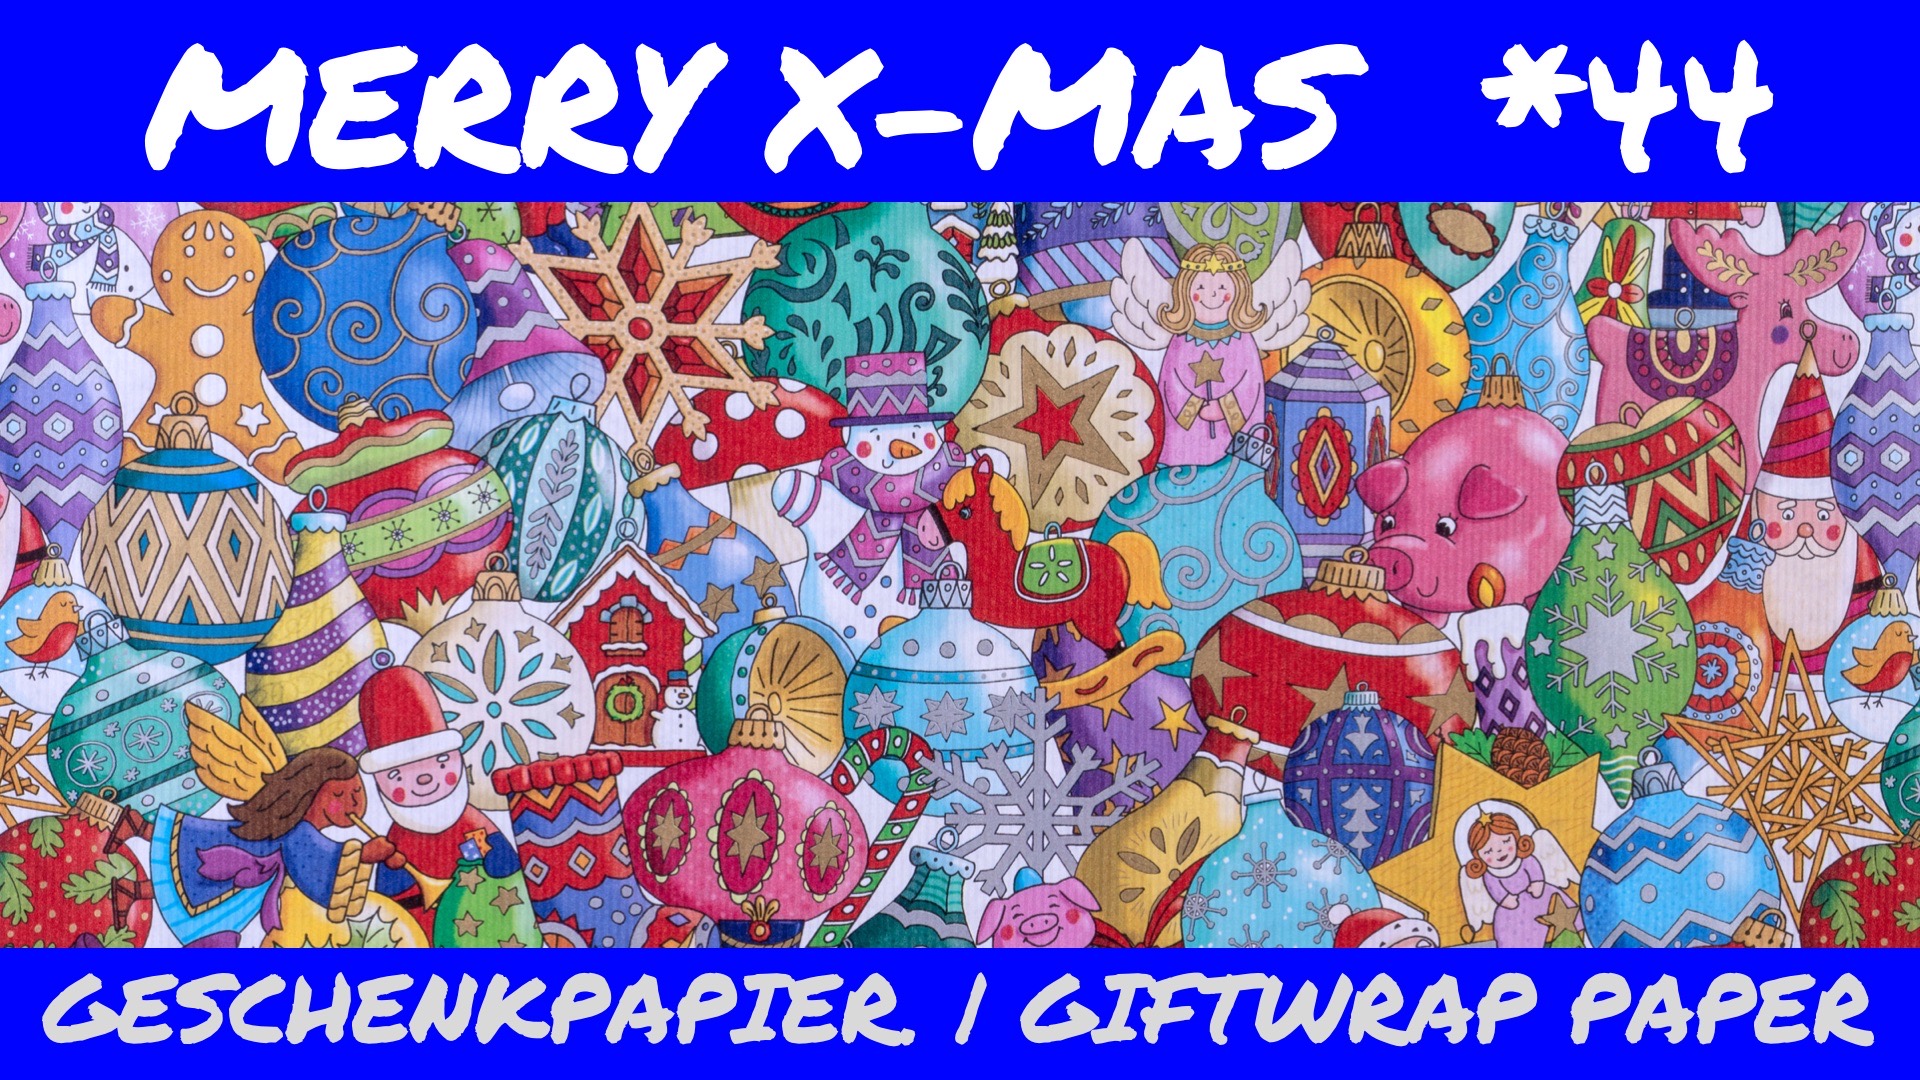 Merry X-mas - Neues Weihnachts-Geschenkpapier für Kinder